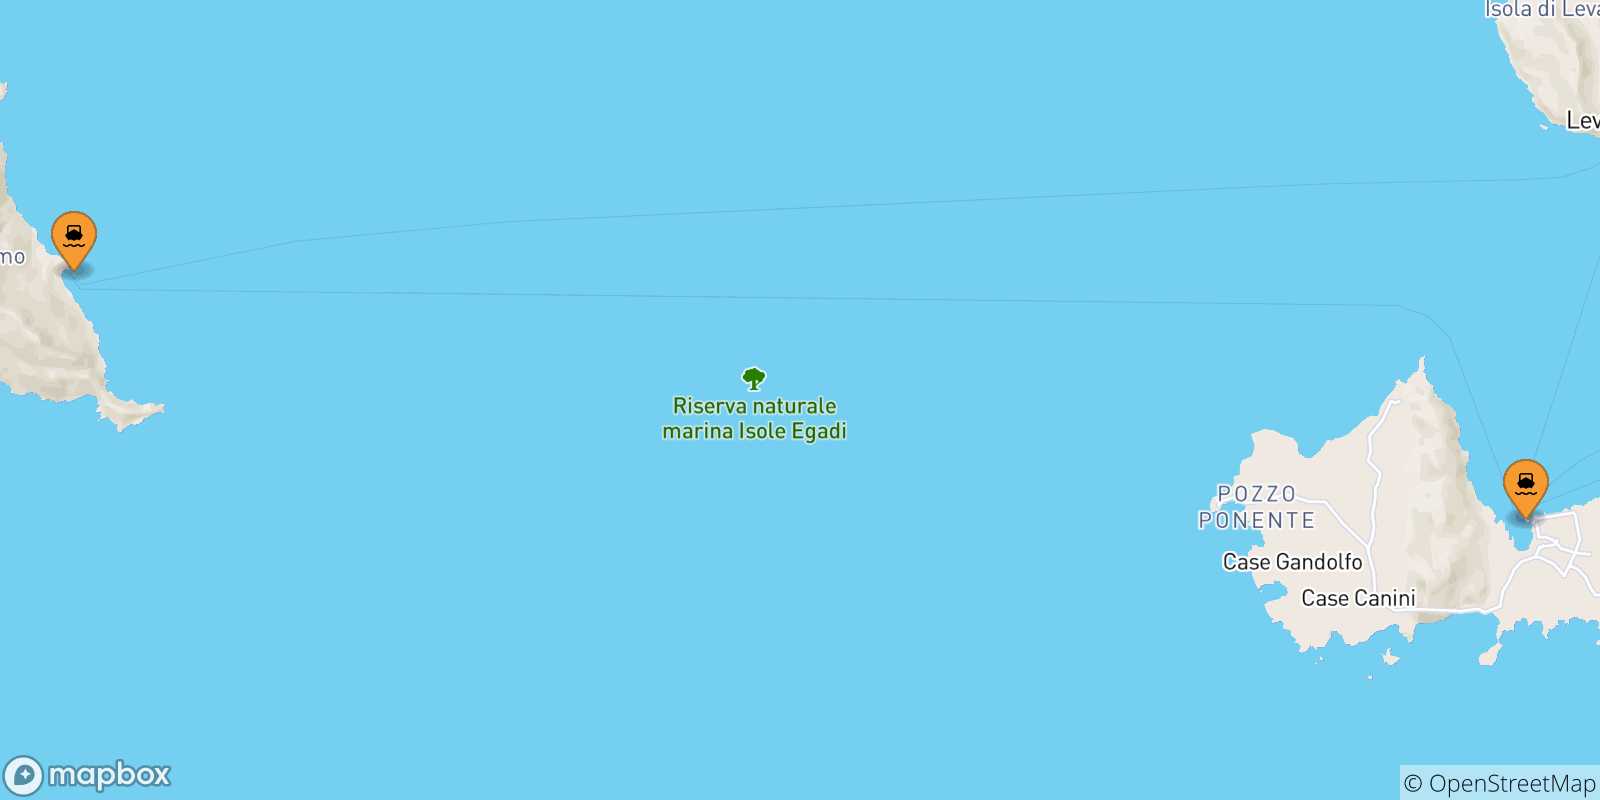 Mappa delle possibili rotte tra le Isole Egadi e Levanzo